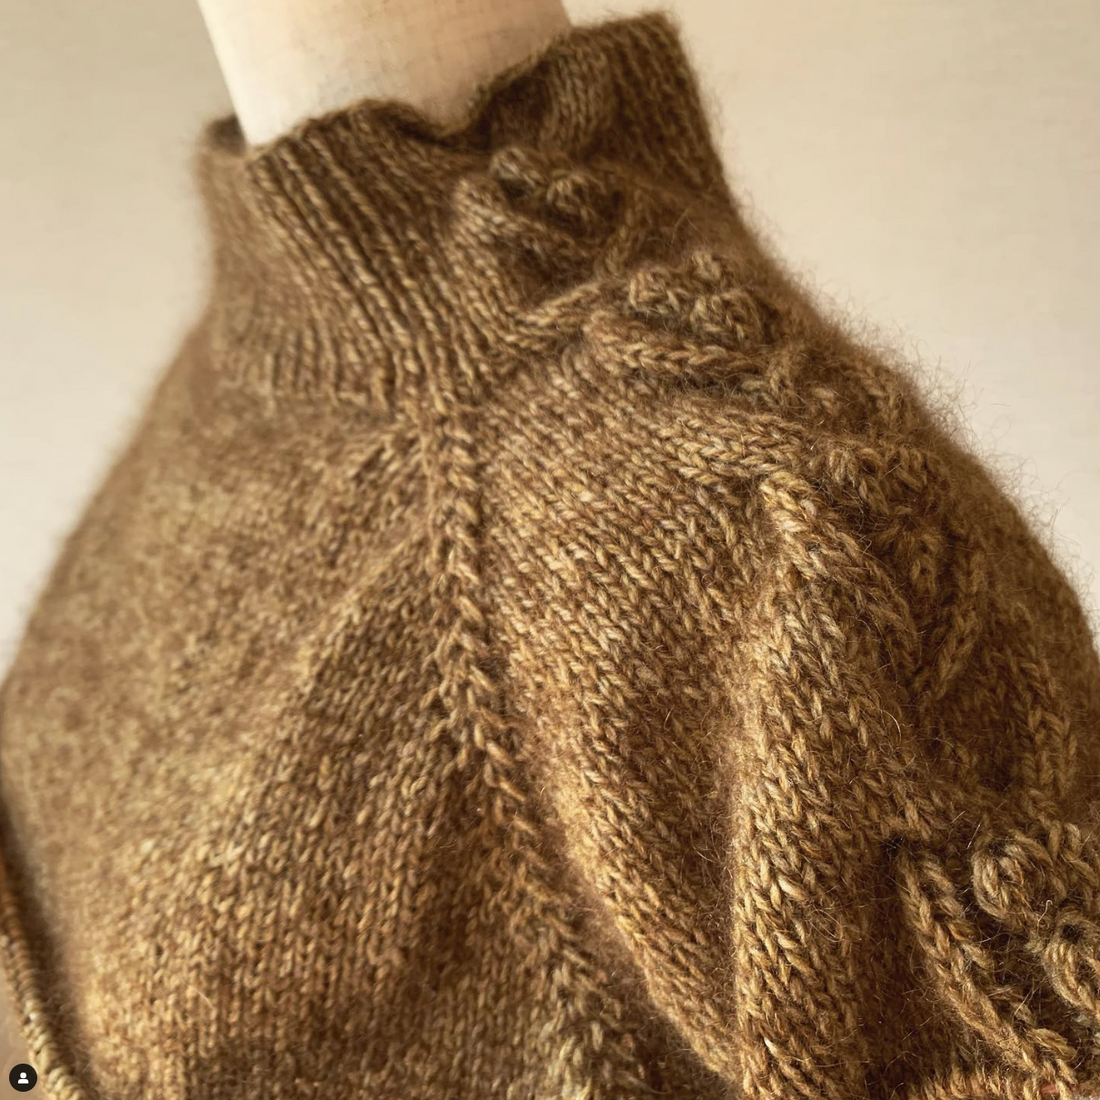 Ayano Tanaka - The Botanique Sweater knitting kit